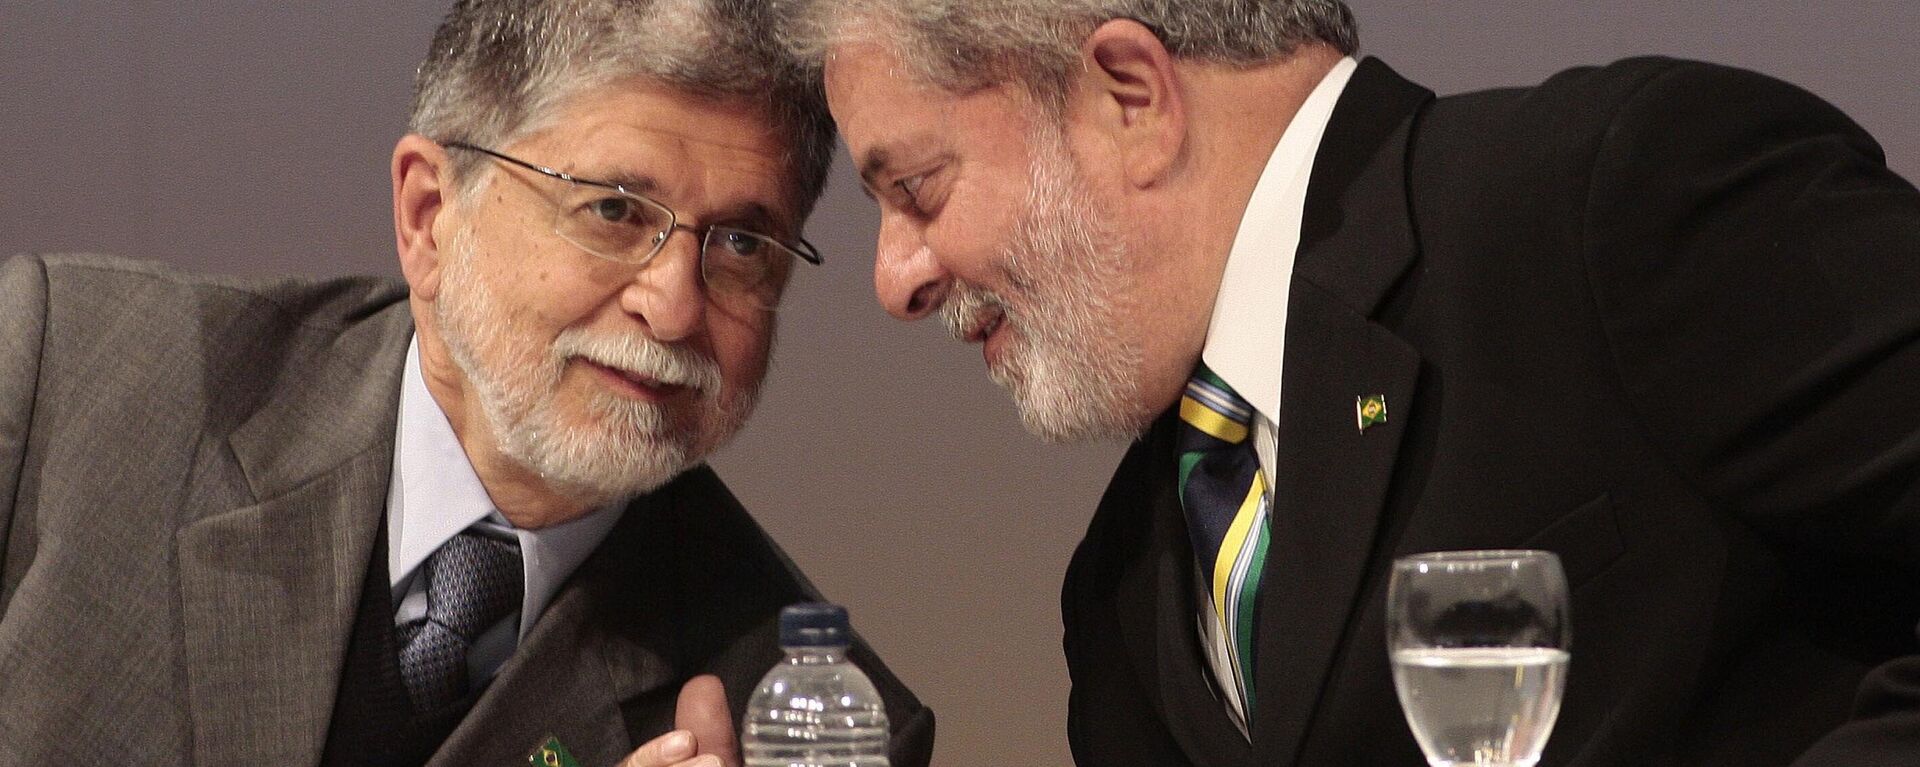 O então ministro das Relações Exteriores do Brasil, Celso Amorim, ao lado do então presidente brasileiro, Luiz Inácio Lula da Silva (PT), em evento na Federação das Indústrias do Estado de São Paulo (FIESP), em 29 de junho de 2010 - Sputnik Brasil, 1920, 04.08.2022